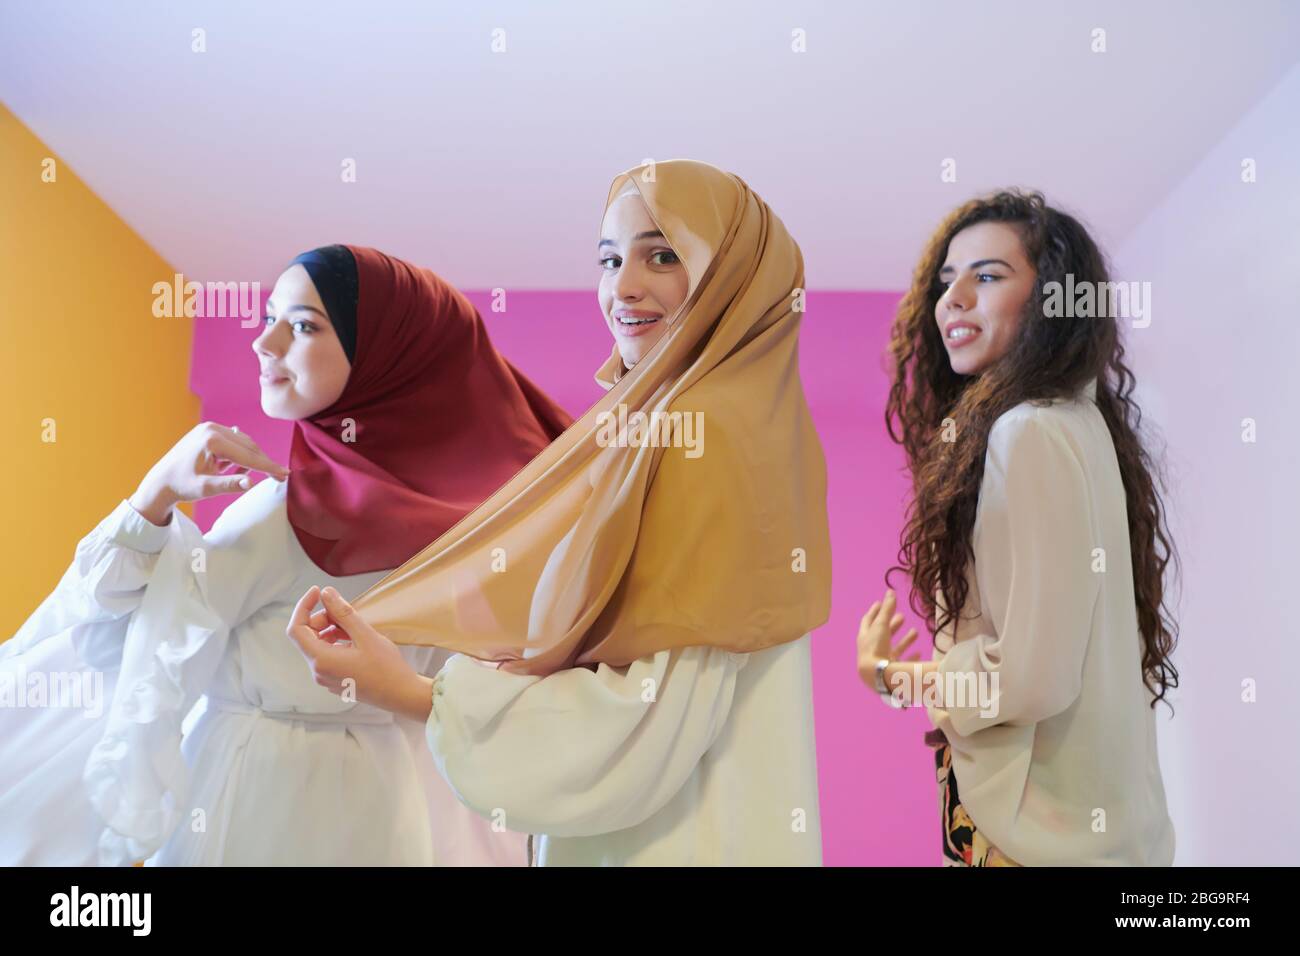 Retrato En Grupo De Mujeres Musulmanas Hermosas Dos De Ellas En Vestido 